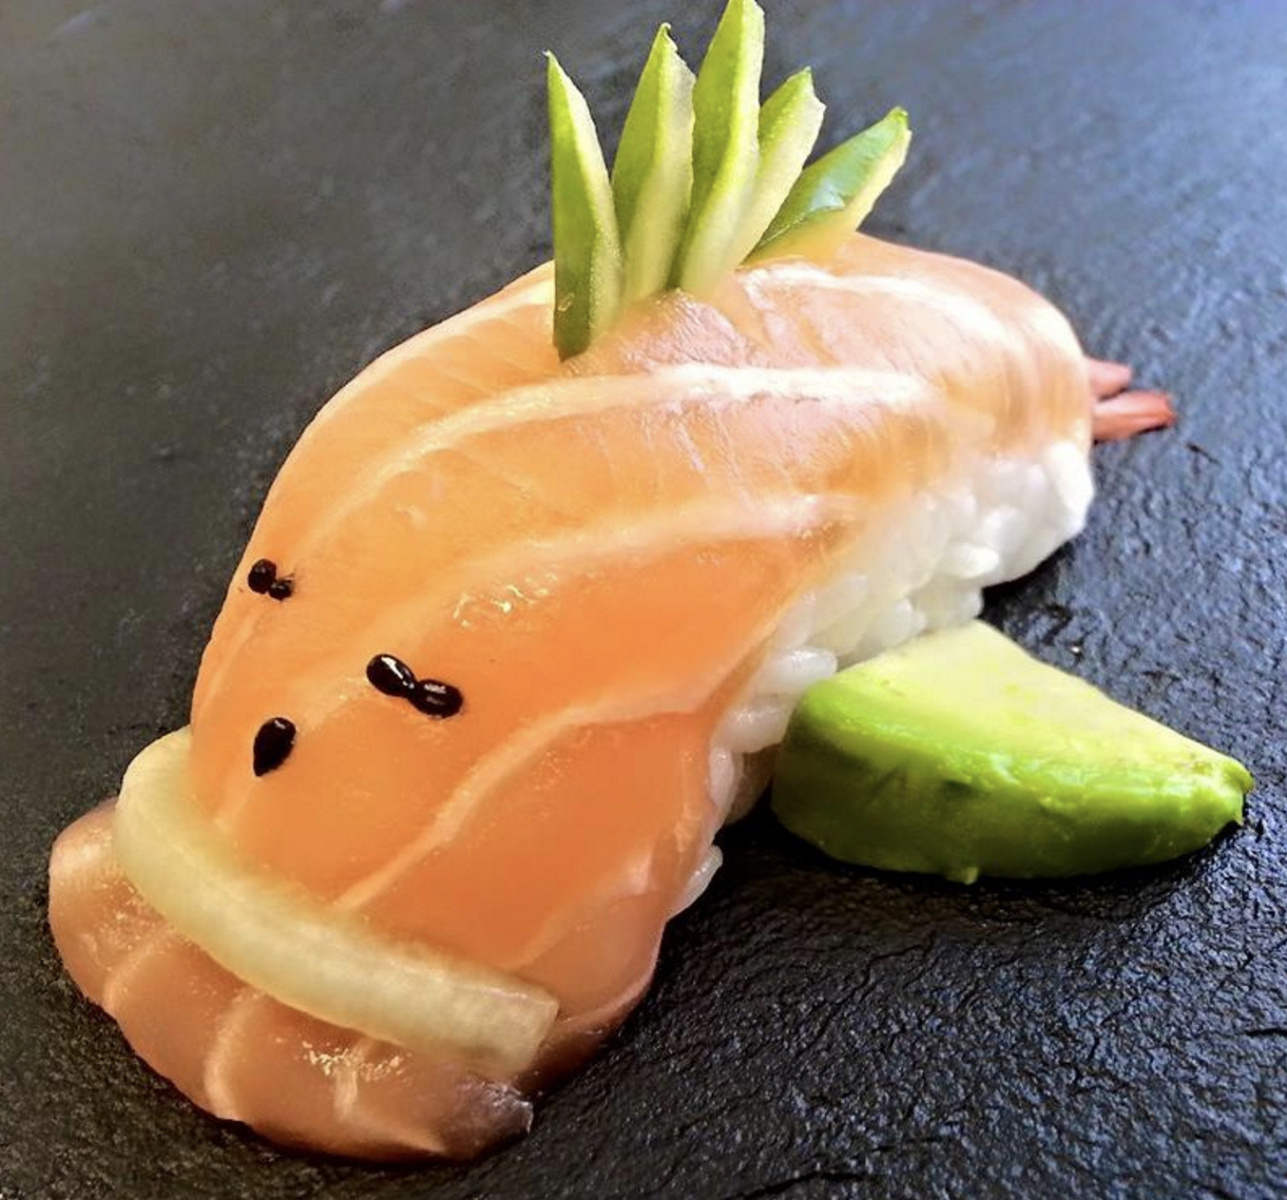 Les meilleurs plateaux sushi saumon + crevettes par de vrais japonais